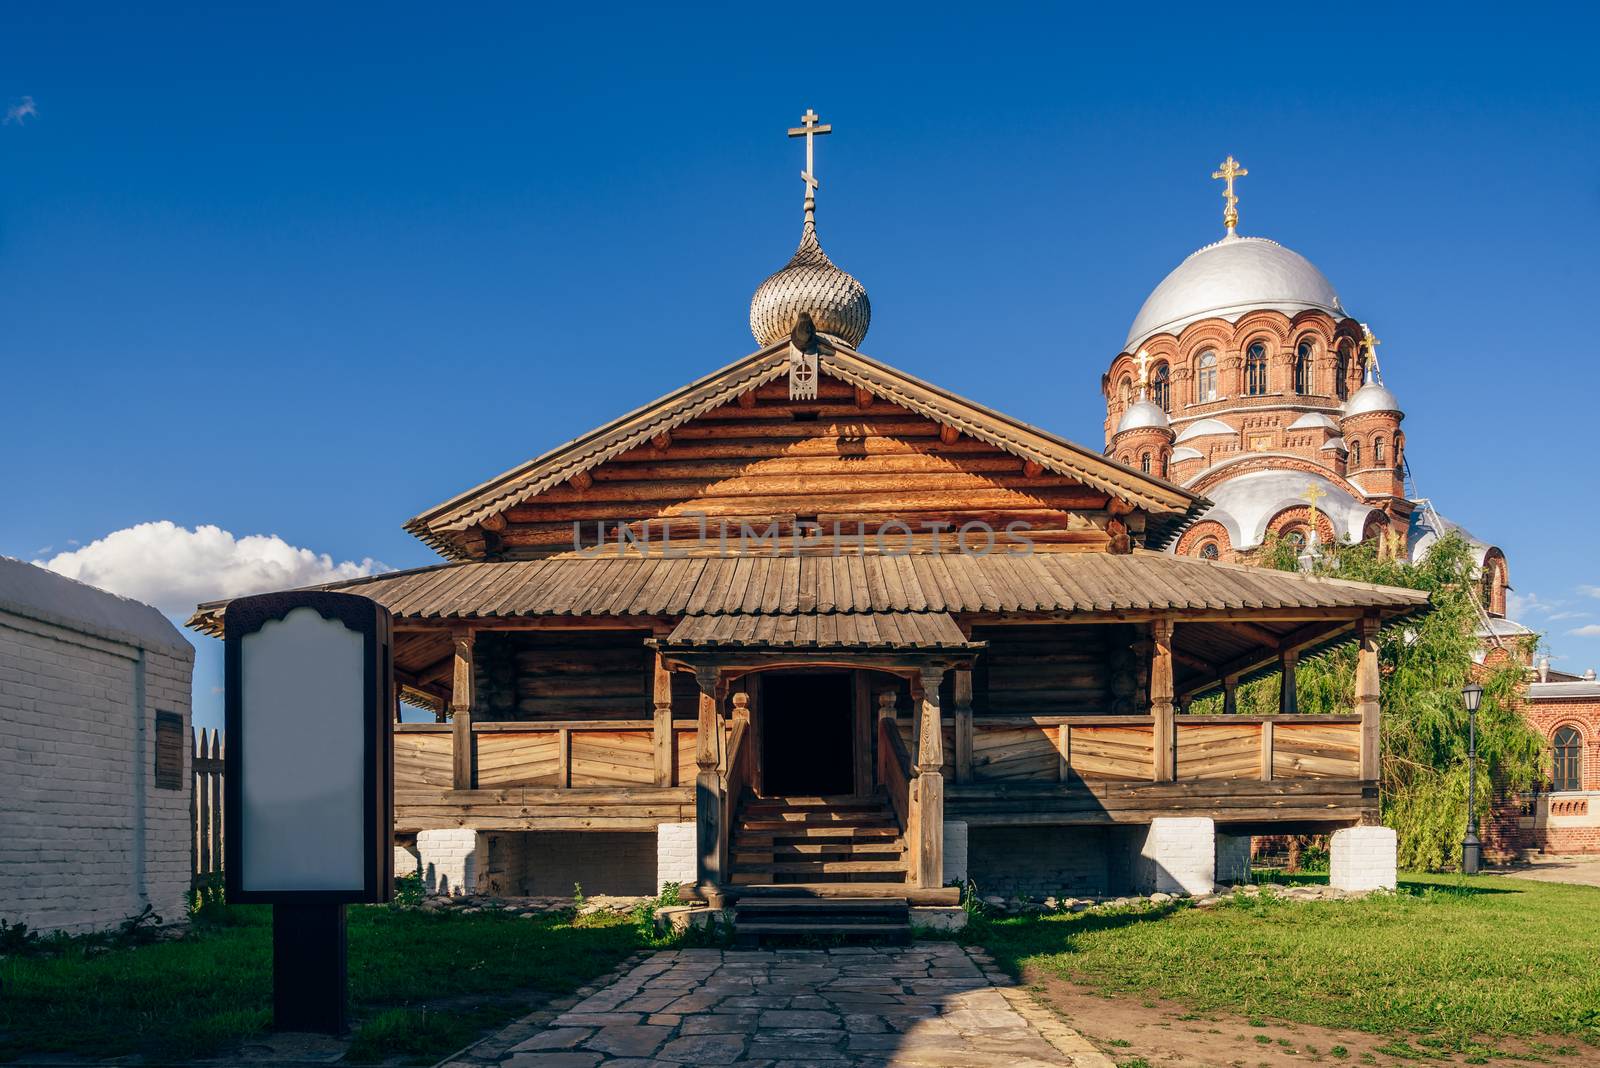 Entrance to the Holy Trinity Church in Sviyazhsk. by Seva_blsv